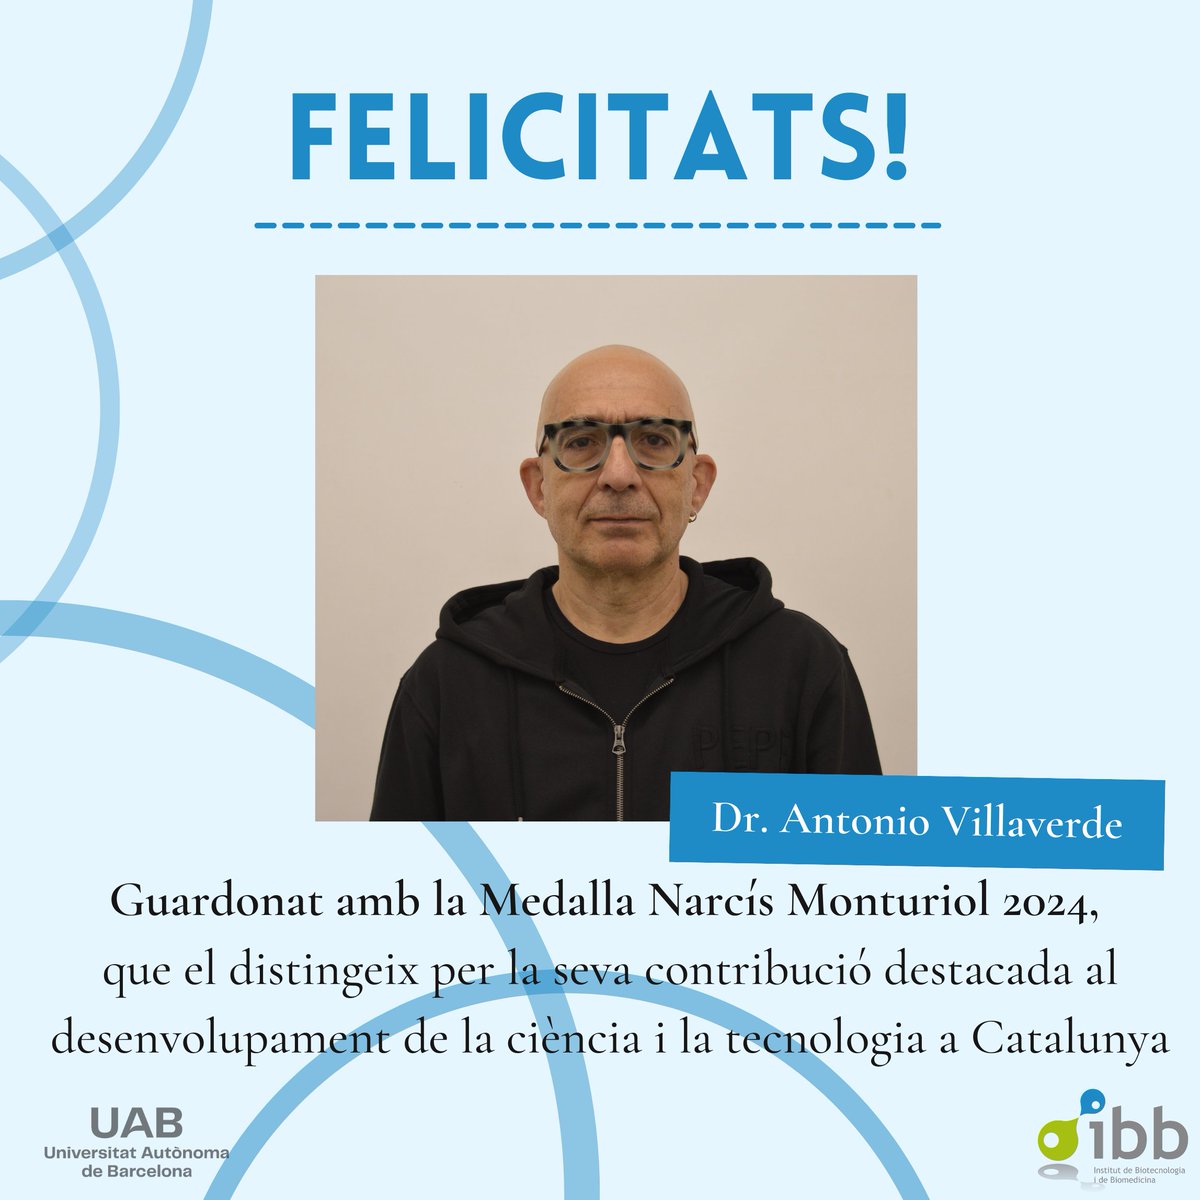 🏅El Dr. Antonio Villaverde, director del Grup de Nanobiotecnologia, ha estat guardonat amb la Medalla Narcís Monturiol de la Generalitat de Catalunya, que distingeix les contribucions científiques a Catalunya. 

🎉 Moltíssimes felicitats per aquest reconeixement!

#IBBpremis